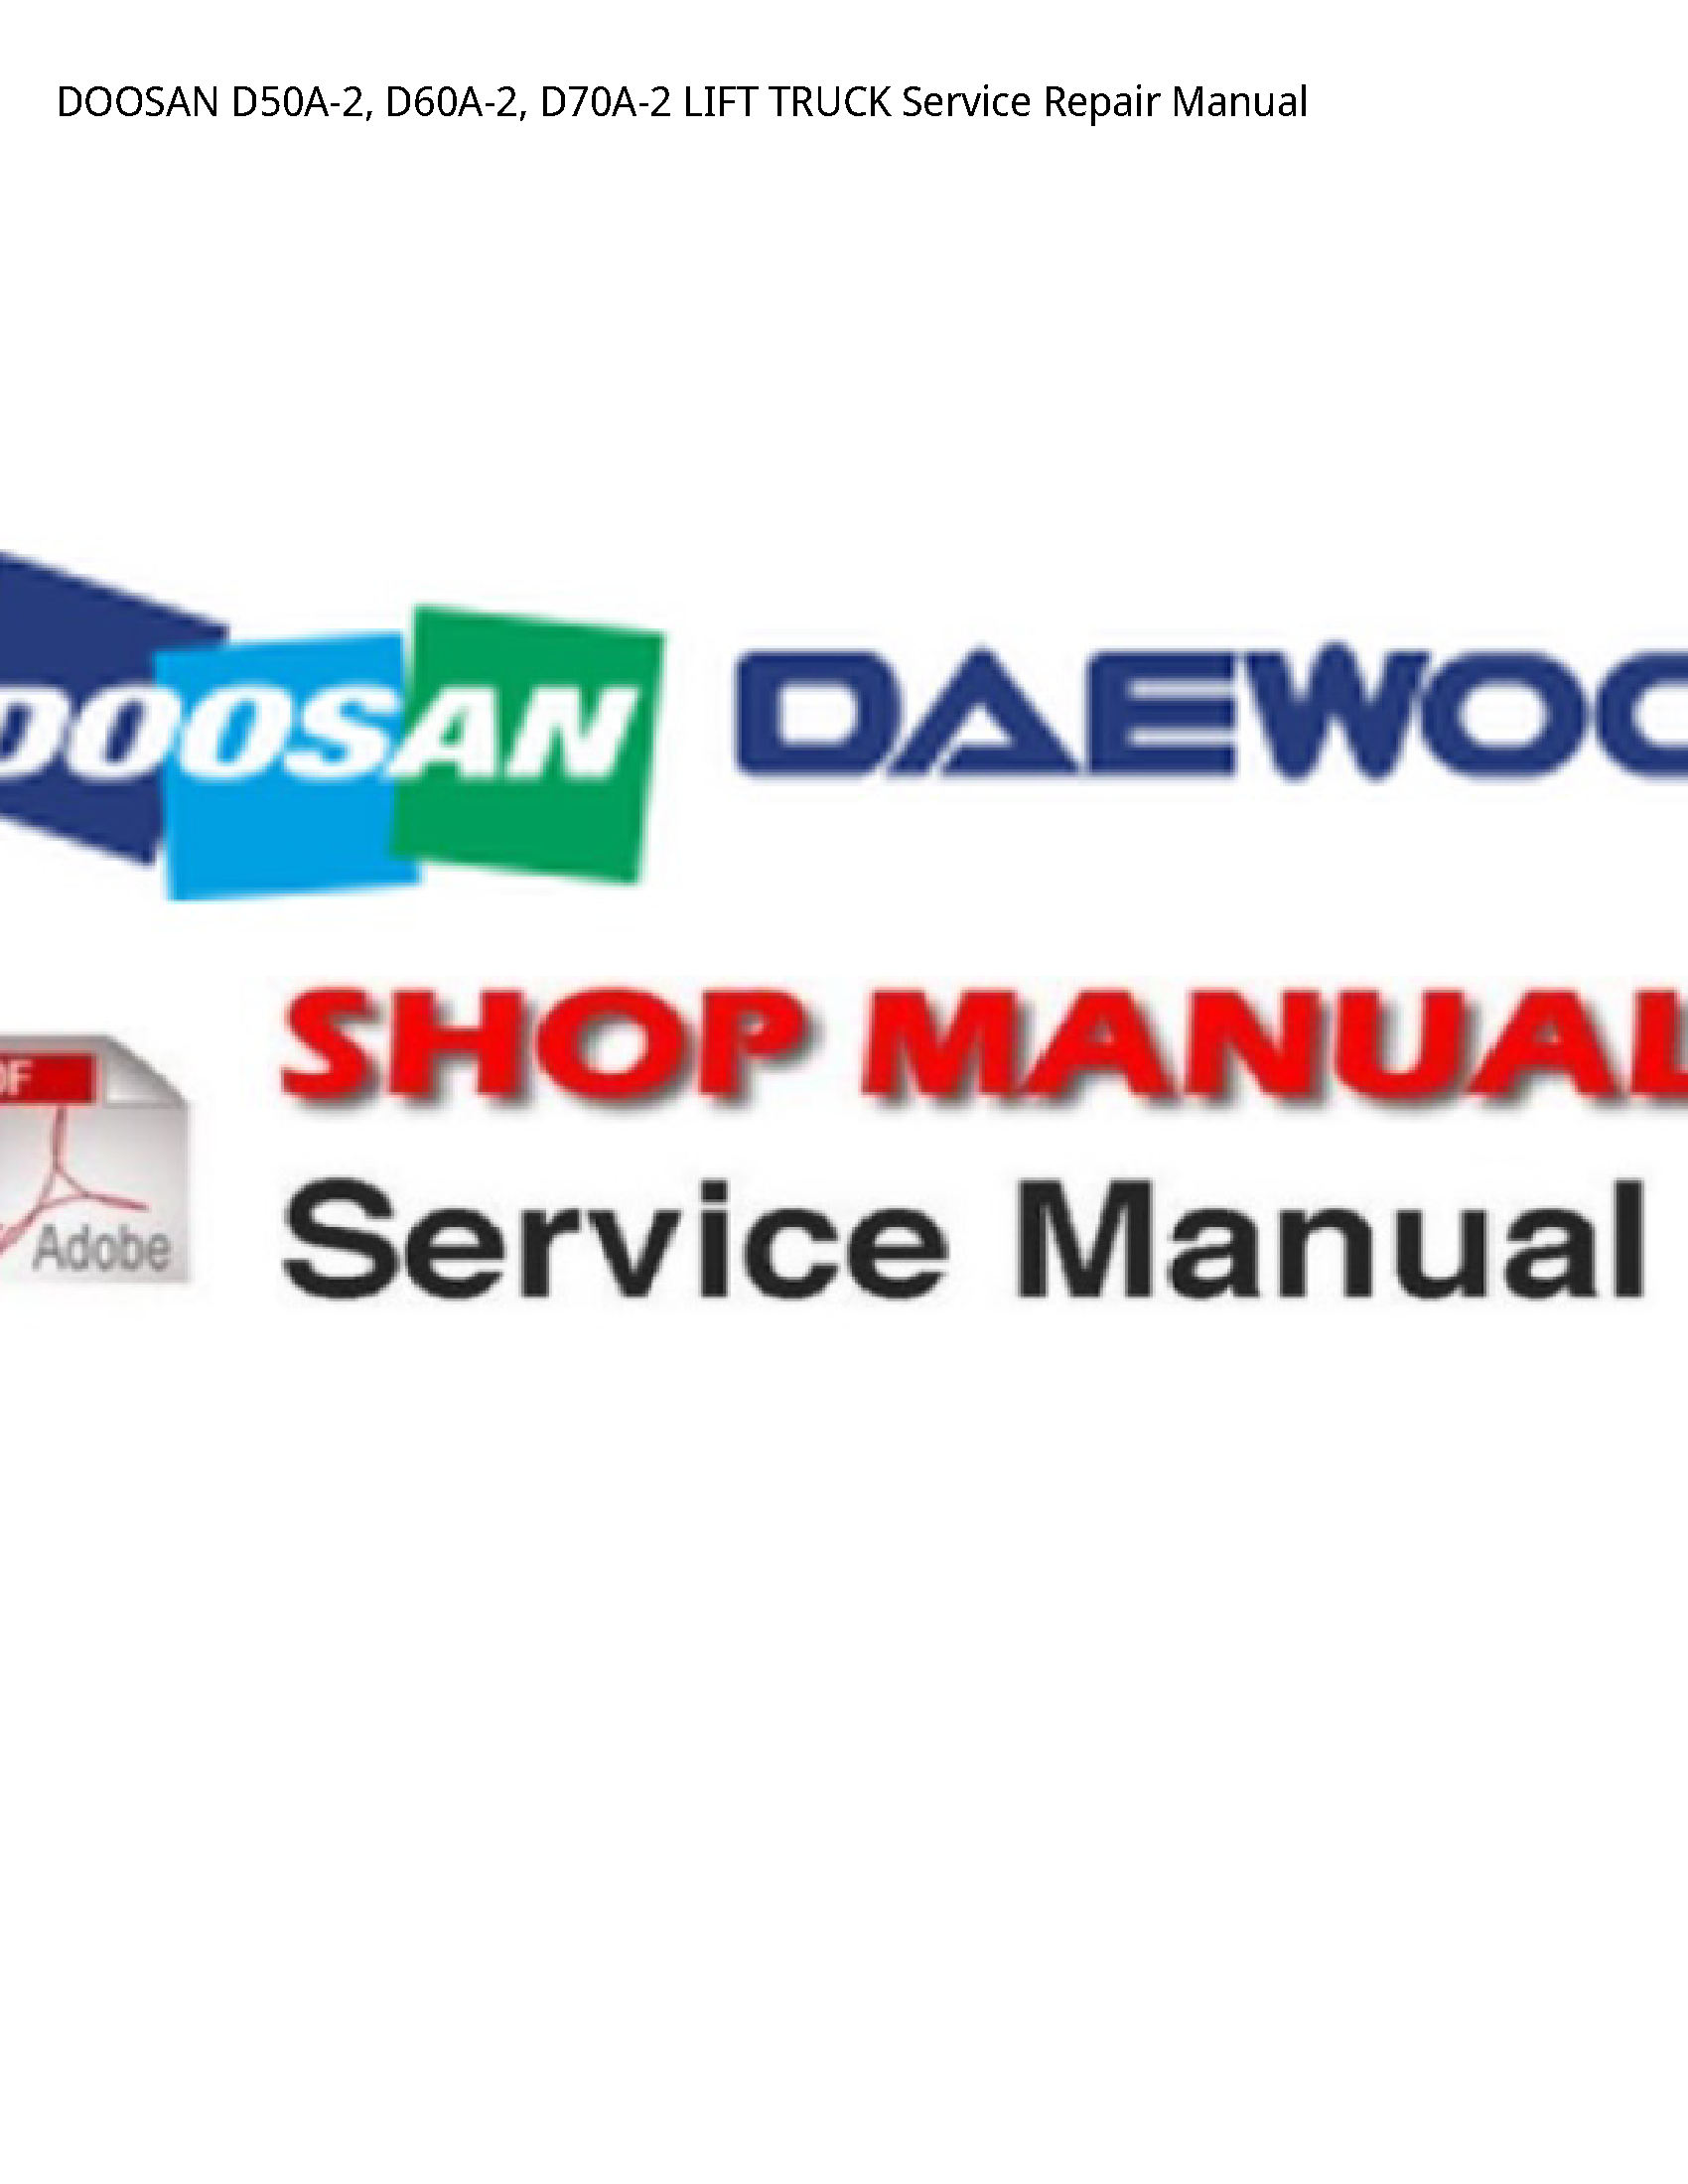 Doosan D50A-2 LIFT TRUCK manual